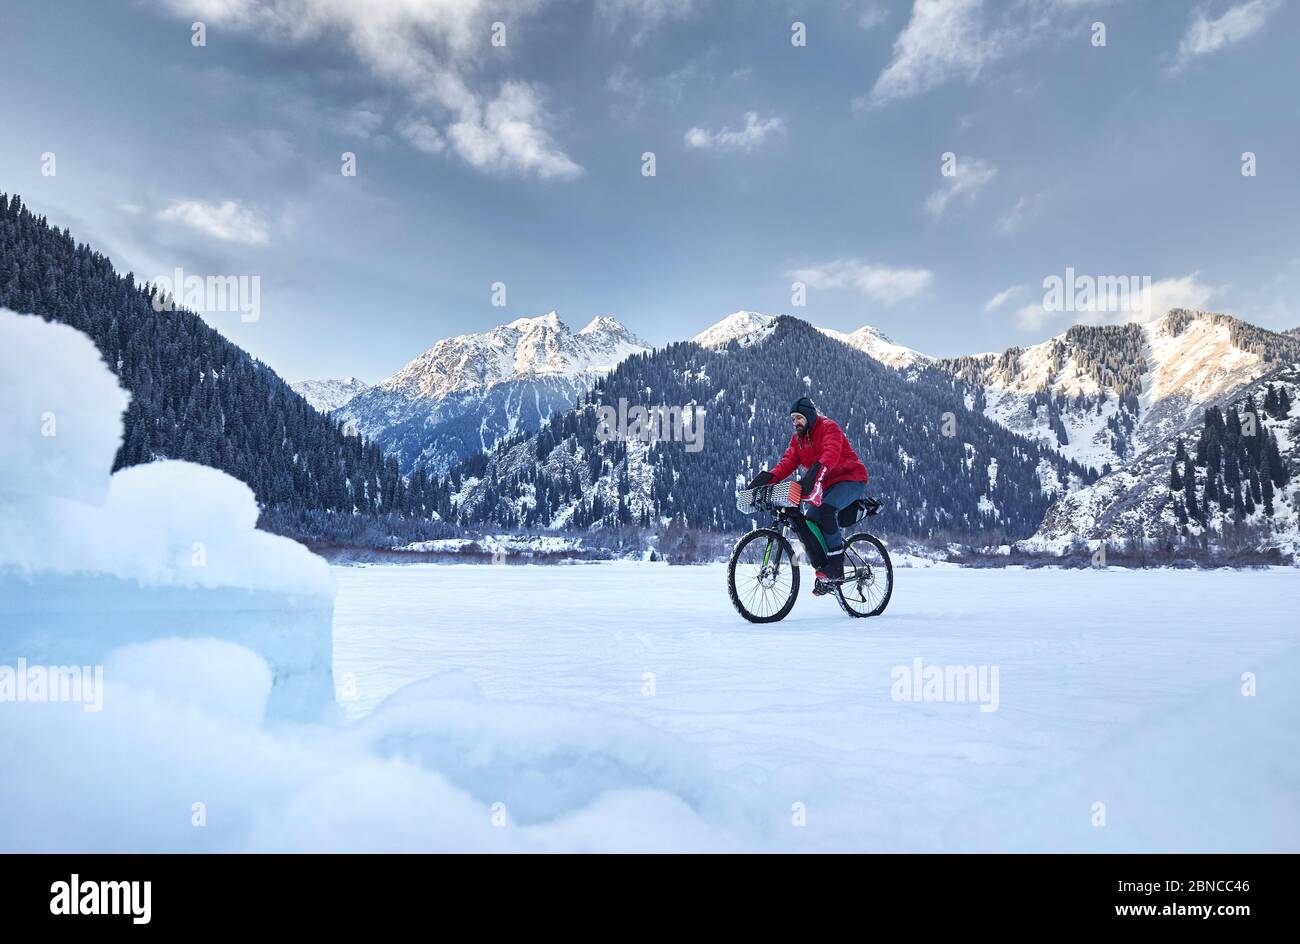 Hombre con chaqueta roja está montando su bicicleta en el lago congelado en las montañas nevadas al fondo Foto de stock